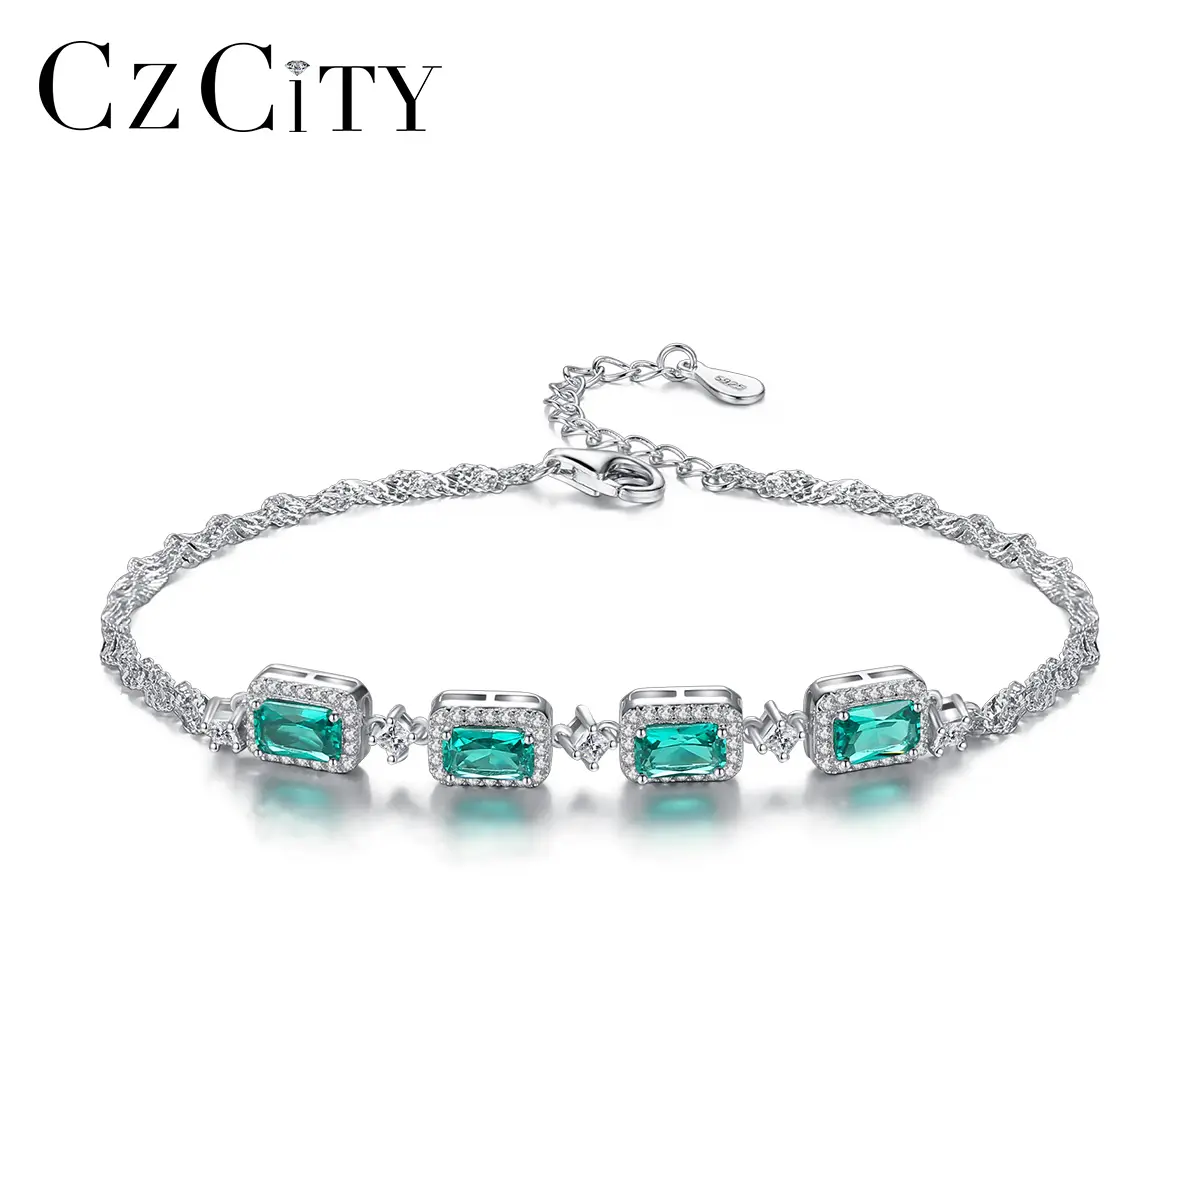 Czcity pulseira prata 925 rodio esmeralda, pedra acessórios bracelete moda casamento